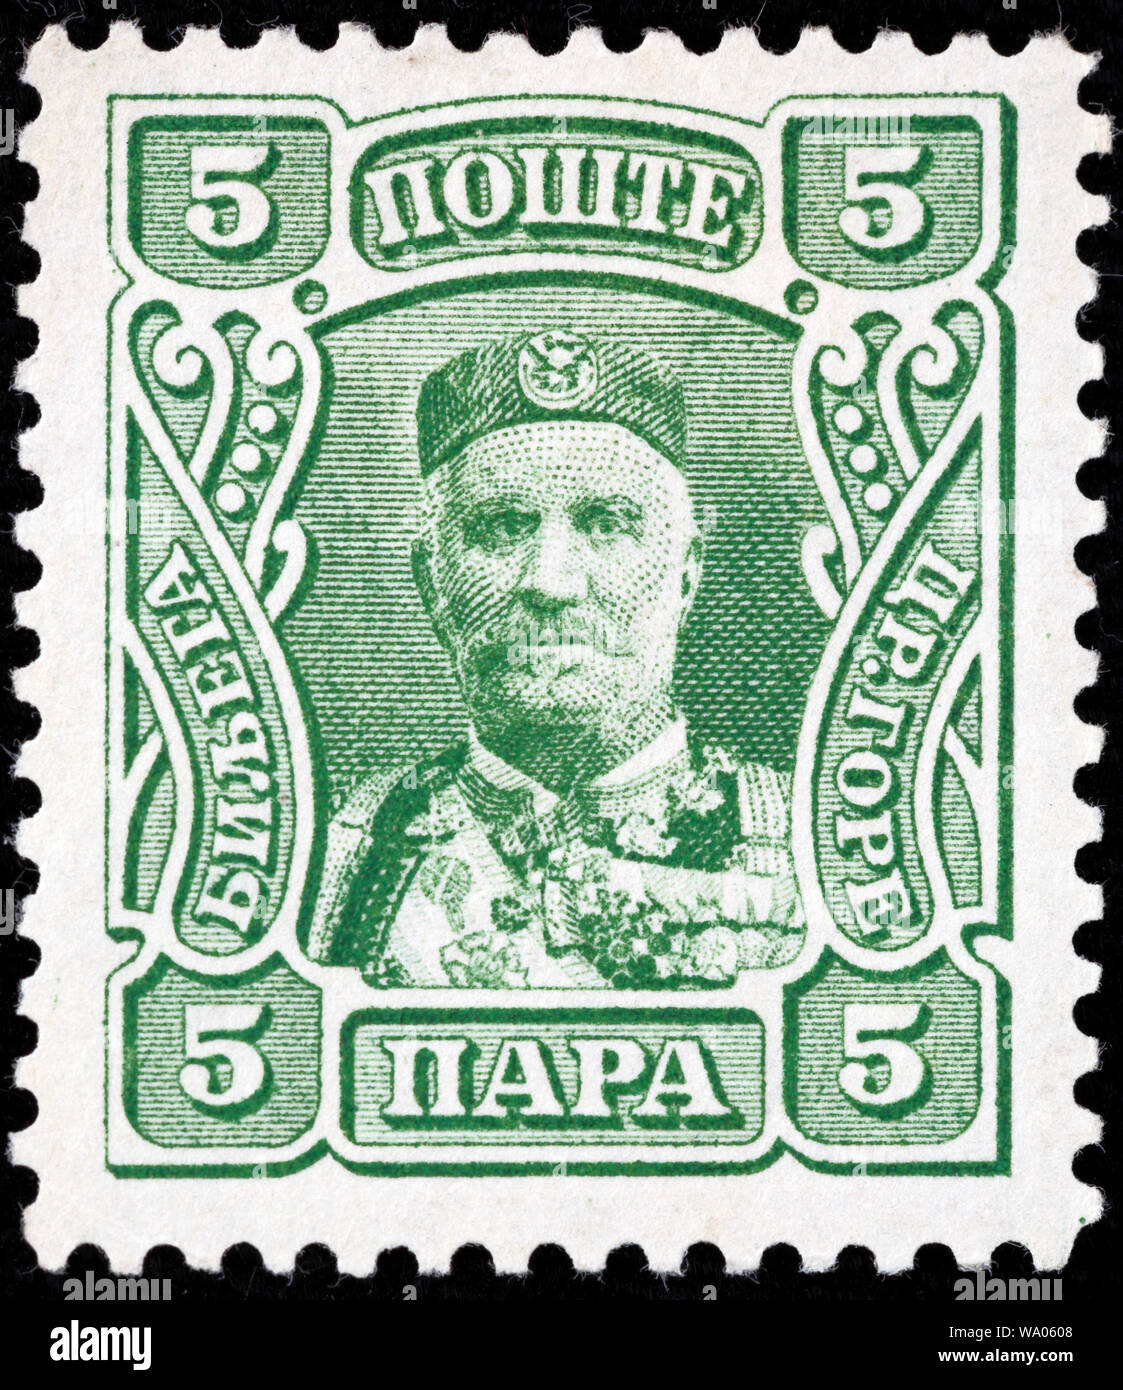 Nicholas I, King of Montenegro (1860-1918), postage stamp, Montenegro, 1907 Stock Photo